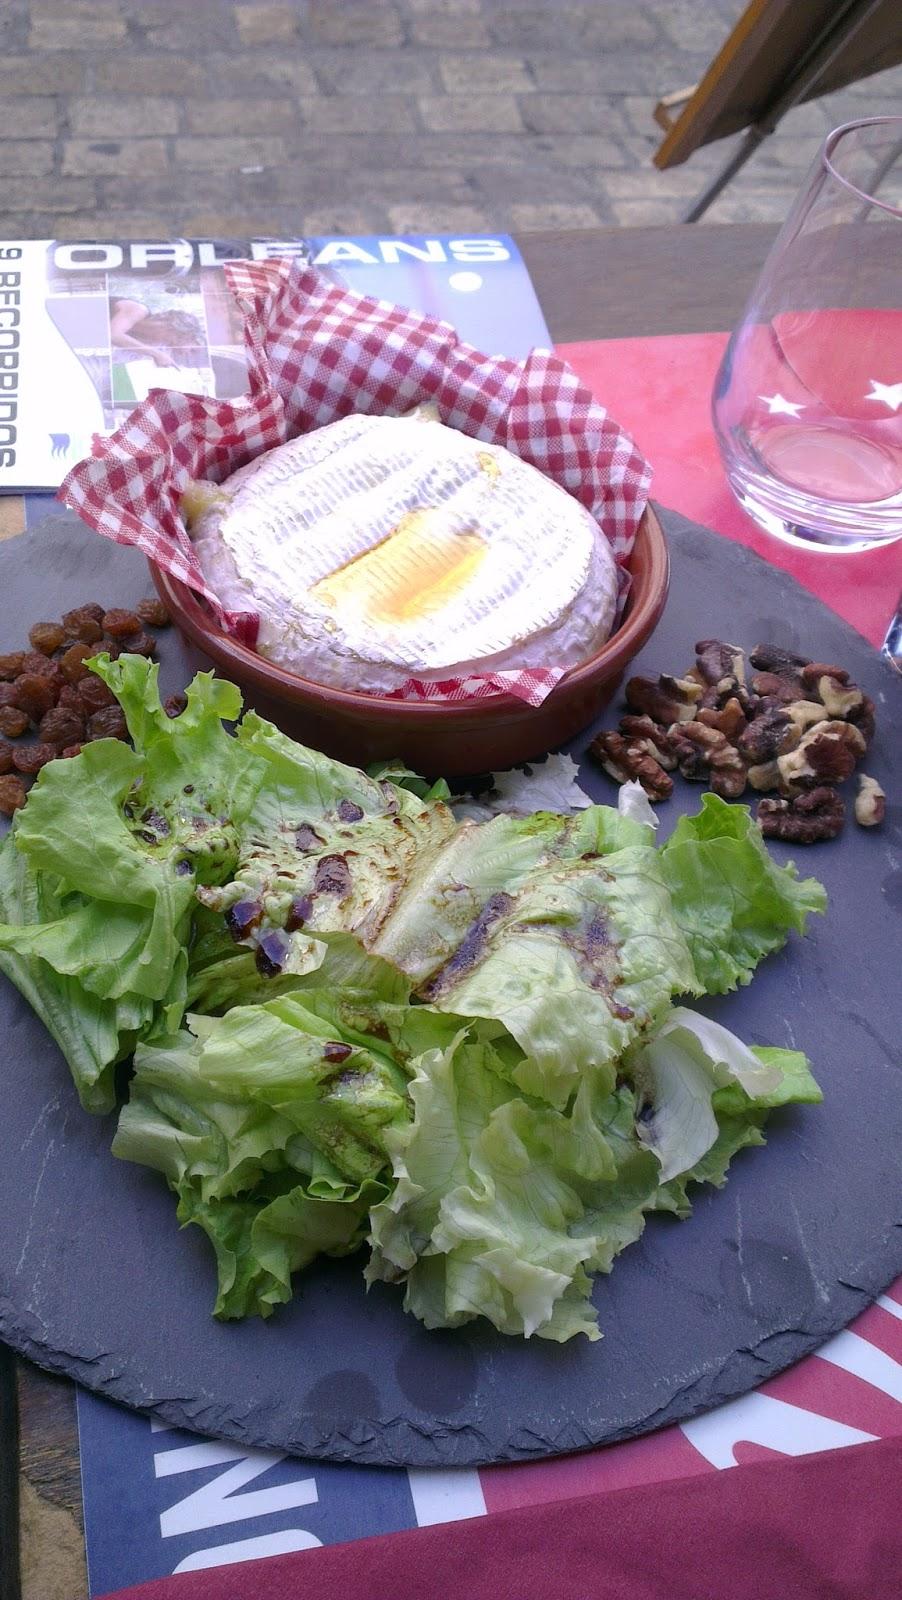 ♥ He vuelto!! Mi experiencia gastronómica en París. Primera parte.